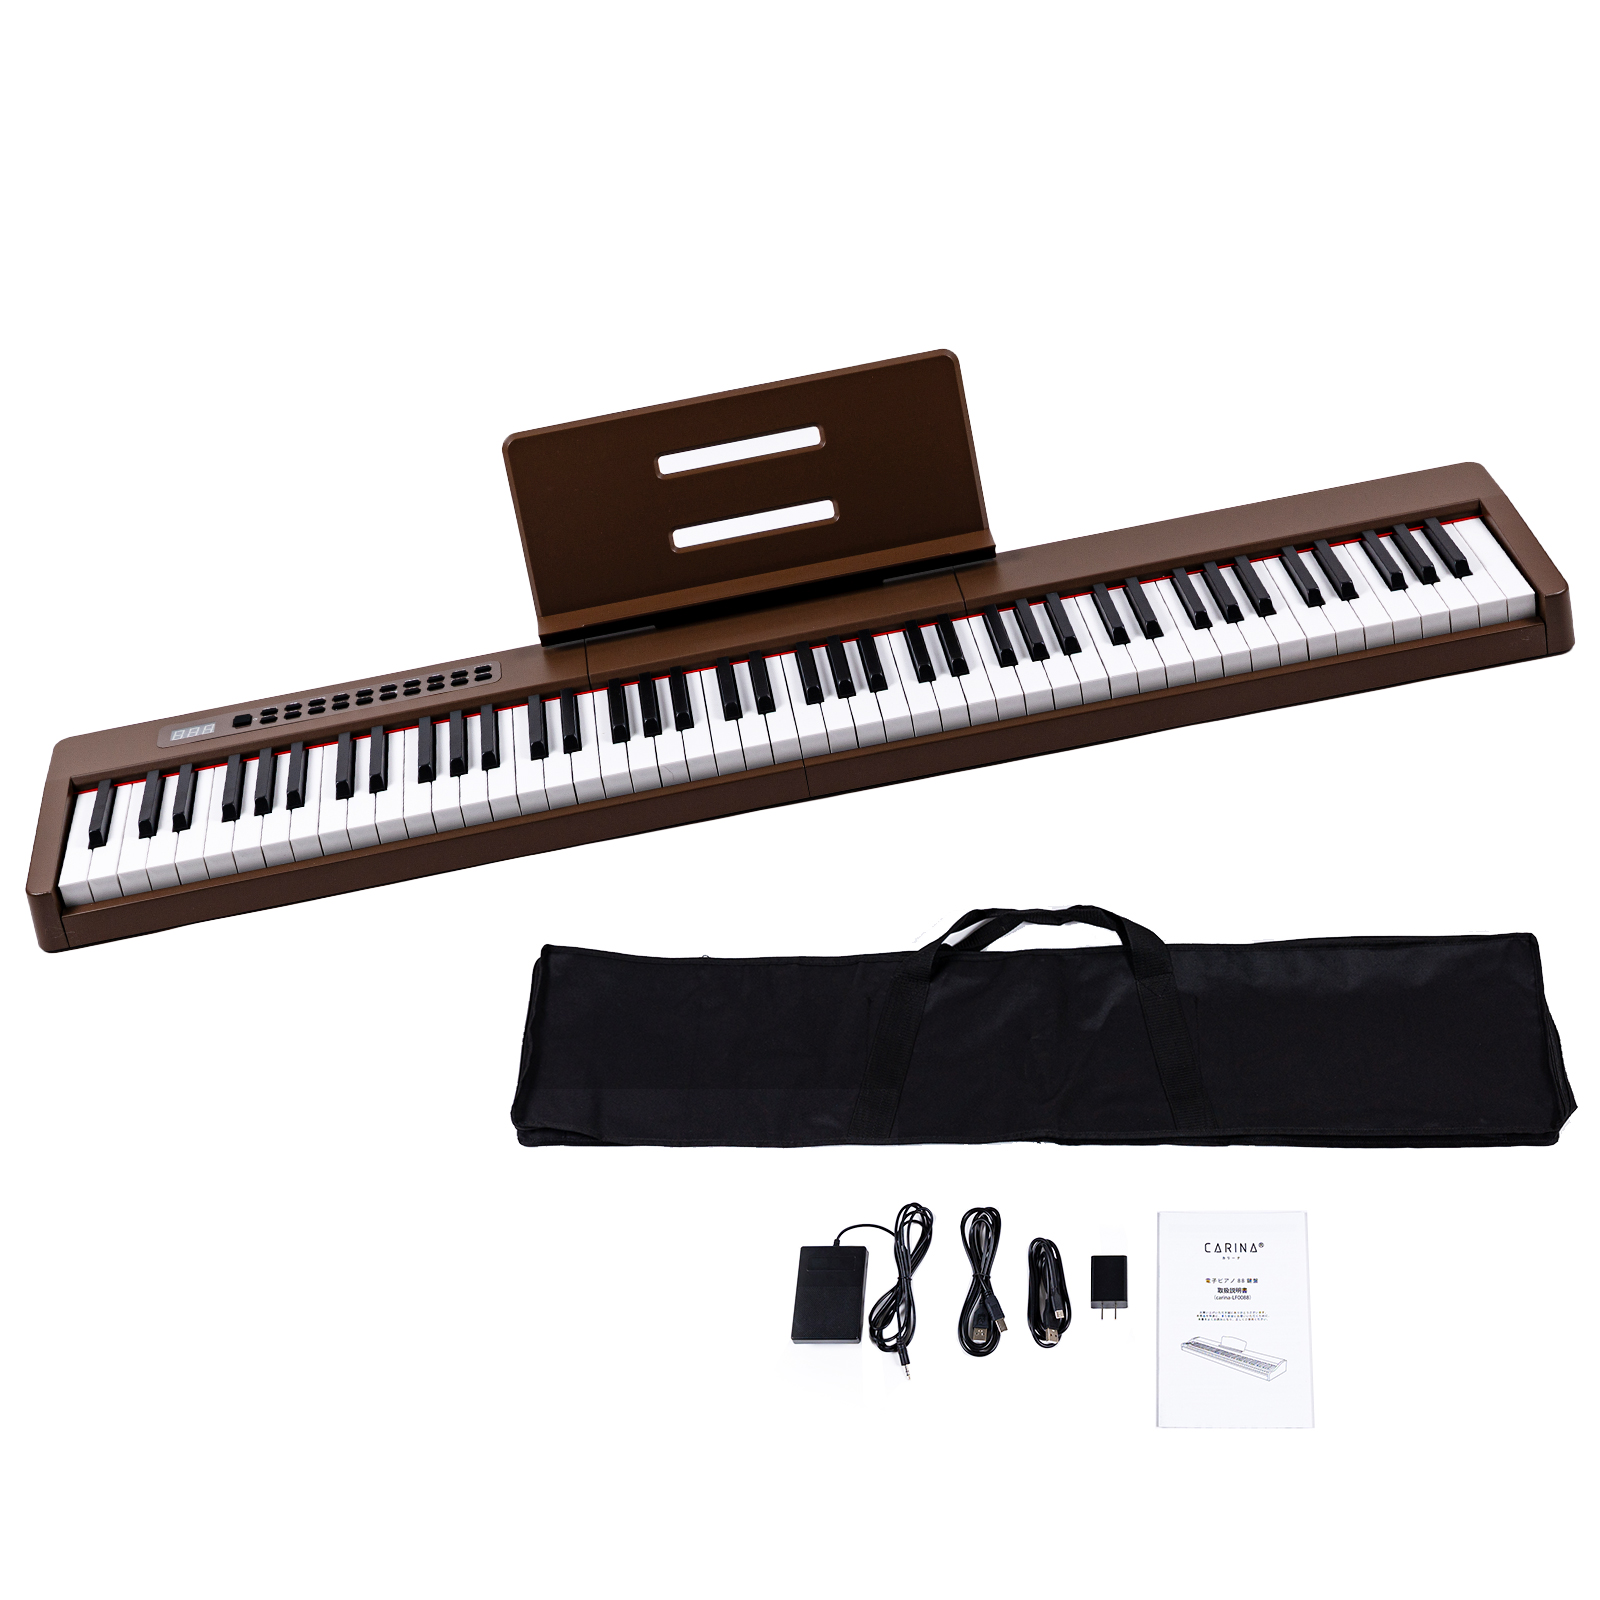 【4カラー】電子ピアノ 88鍵盤 スリムボディ 充電可能 dream音源 MIDI対応 キーボード スリム 軽い プレゼント 新学期 新生活【一年保証】